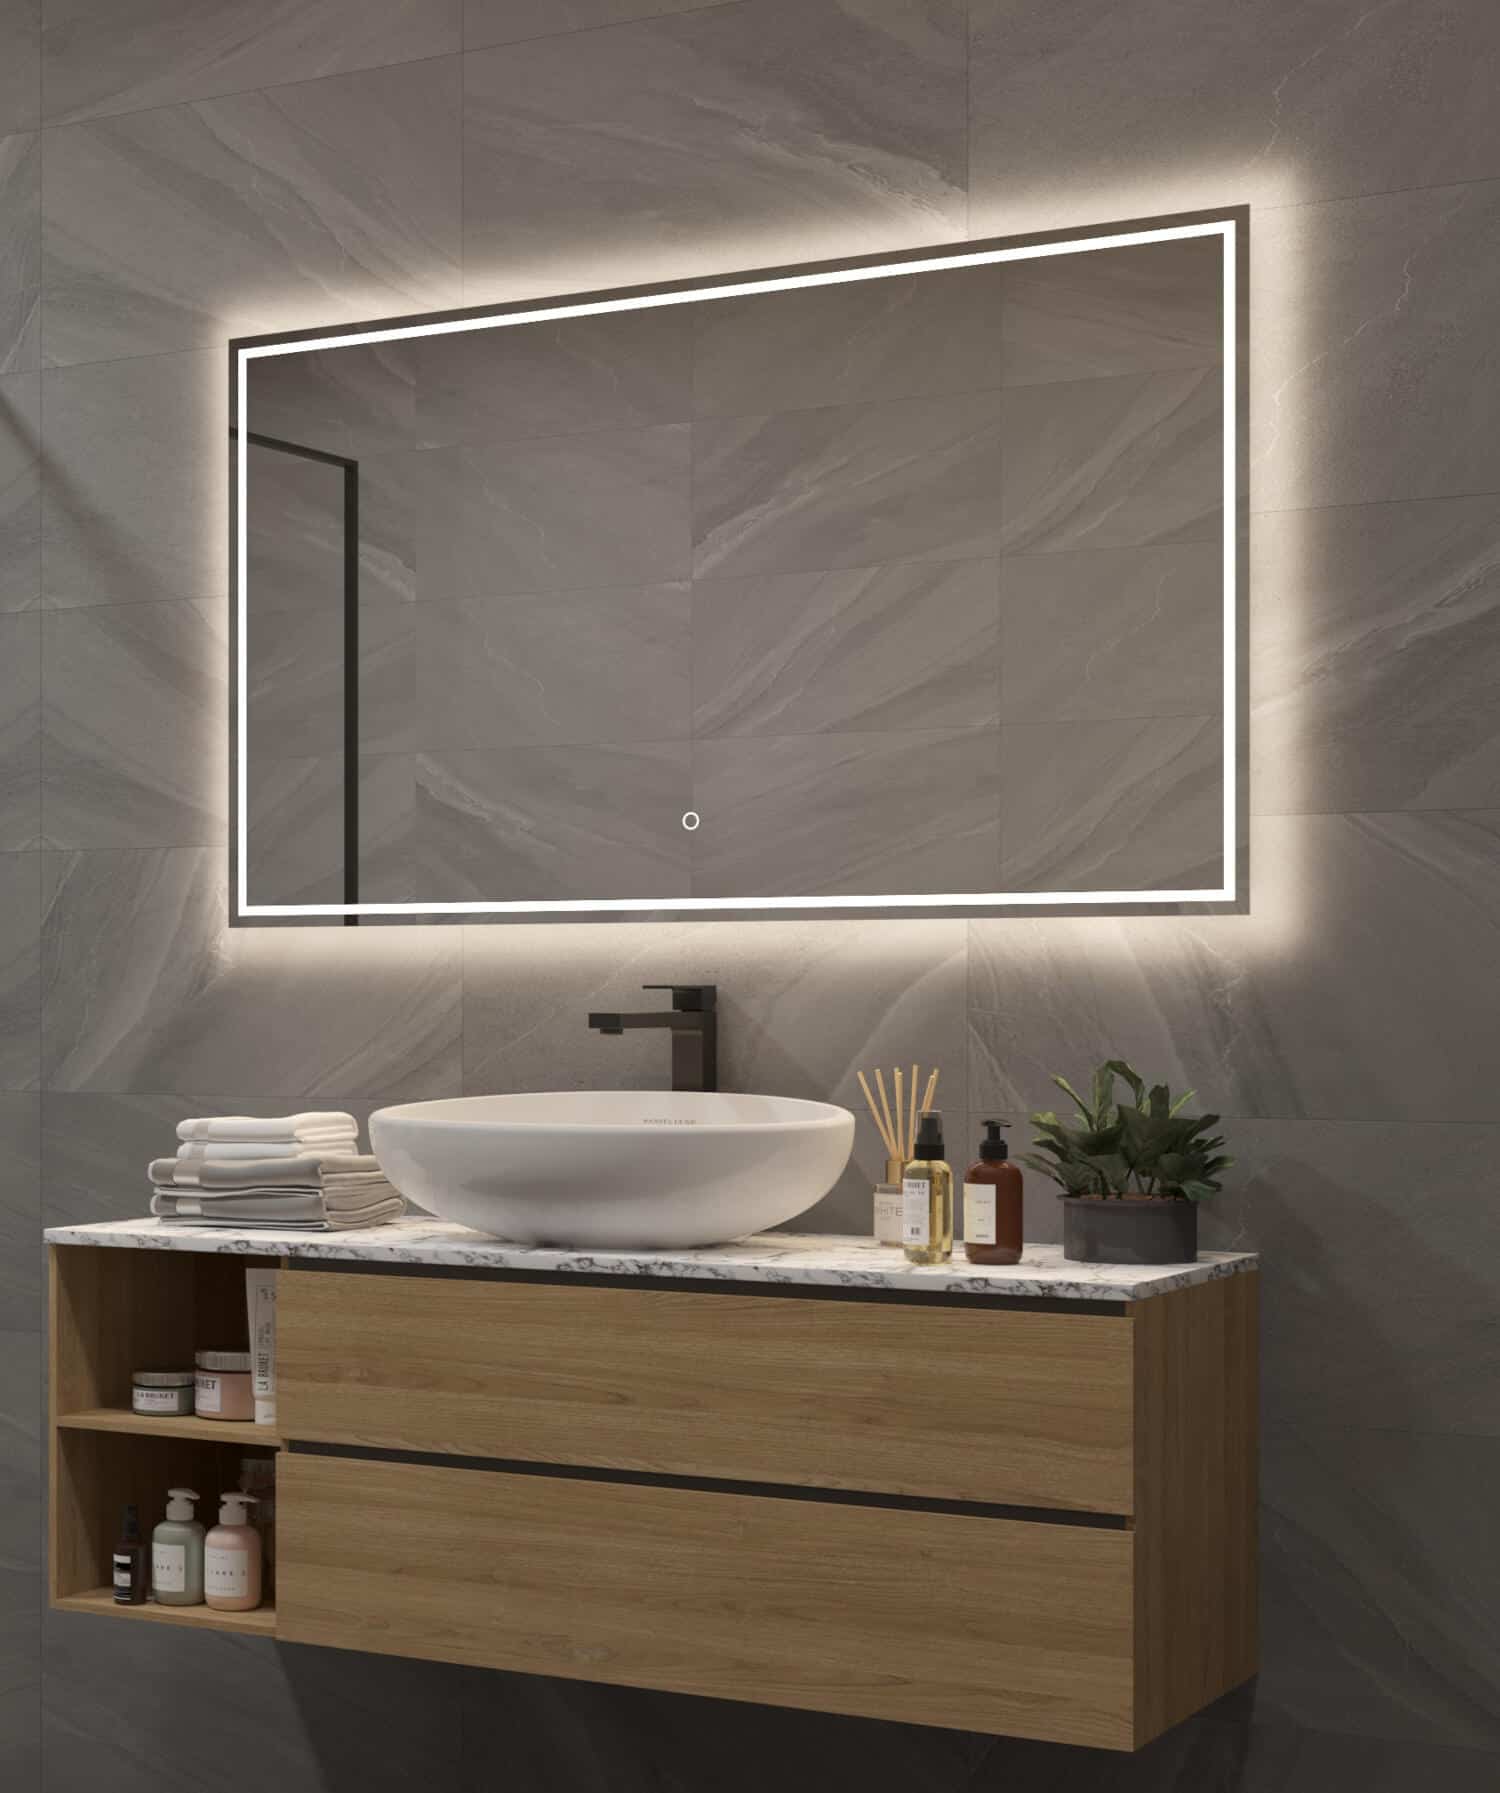 De indirecte verlichting schijnt fraai vanachter de spiegel over de wand en het badkamermeubel, terwijl de directe verlichting het gezicht praktisch verlicht